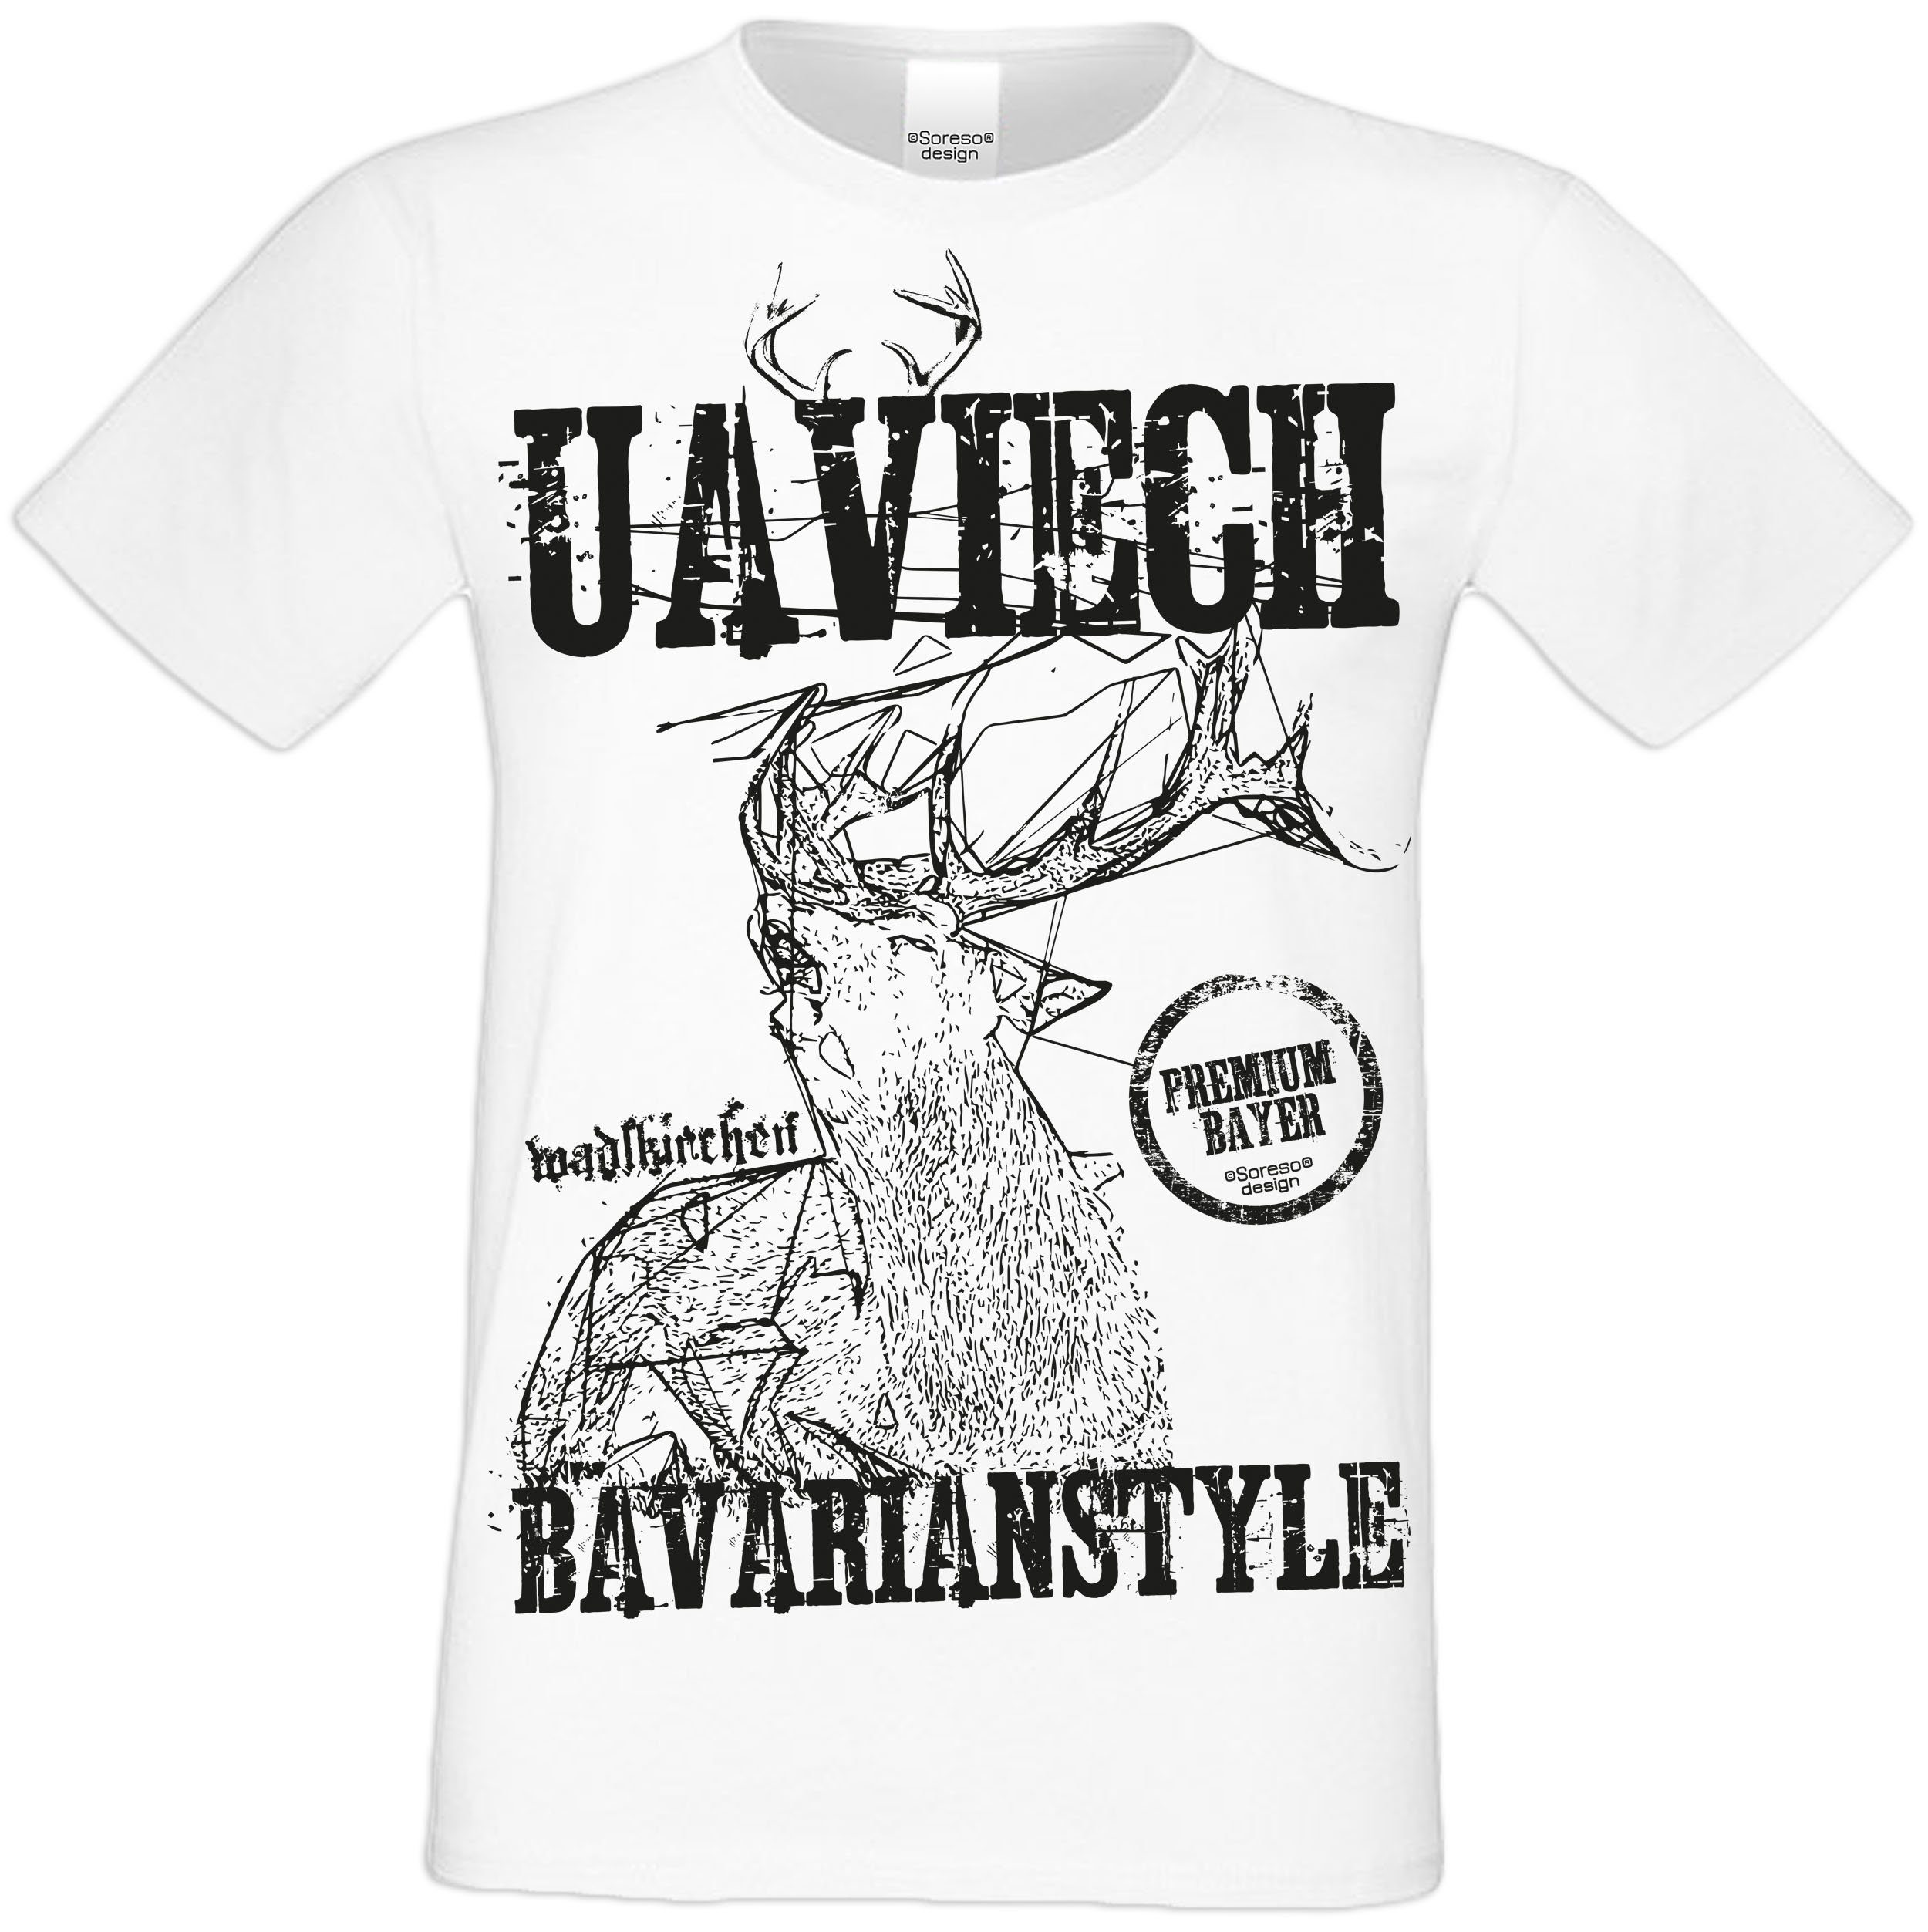 Herren Uaviech Trachtenshirt (Ein T-Shirt T-Shirt) T-Shirt Soreso® Trachten weiss